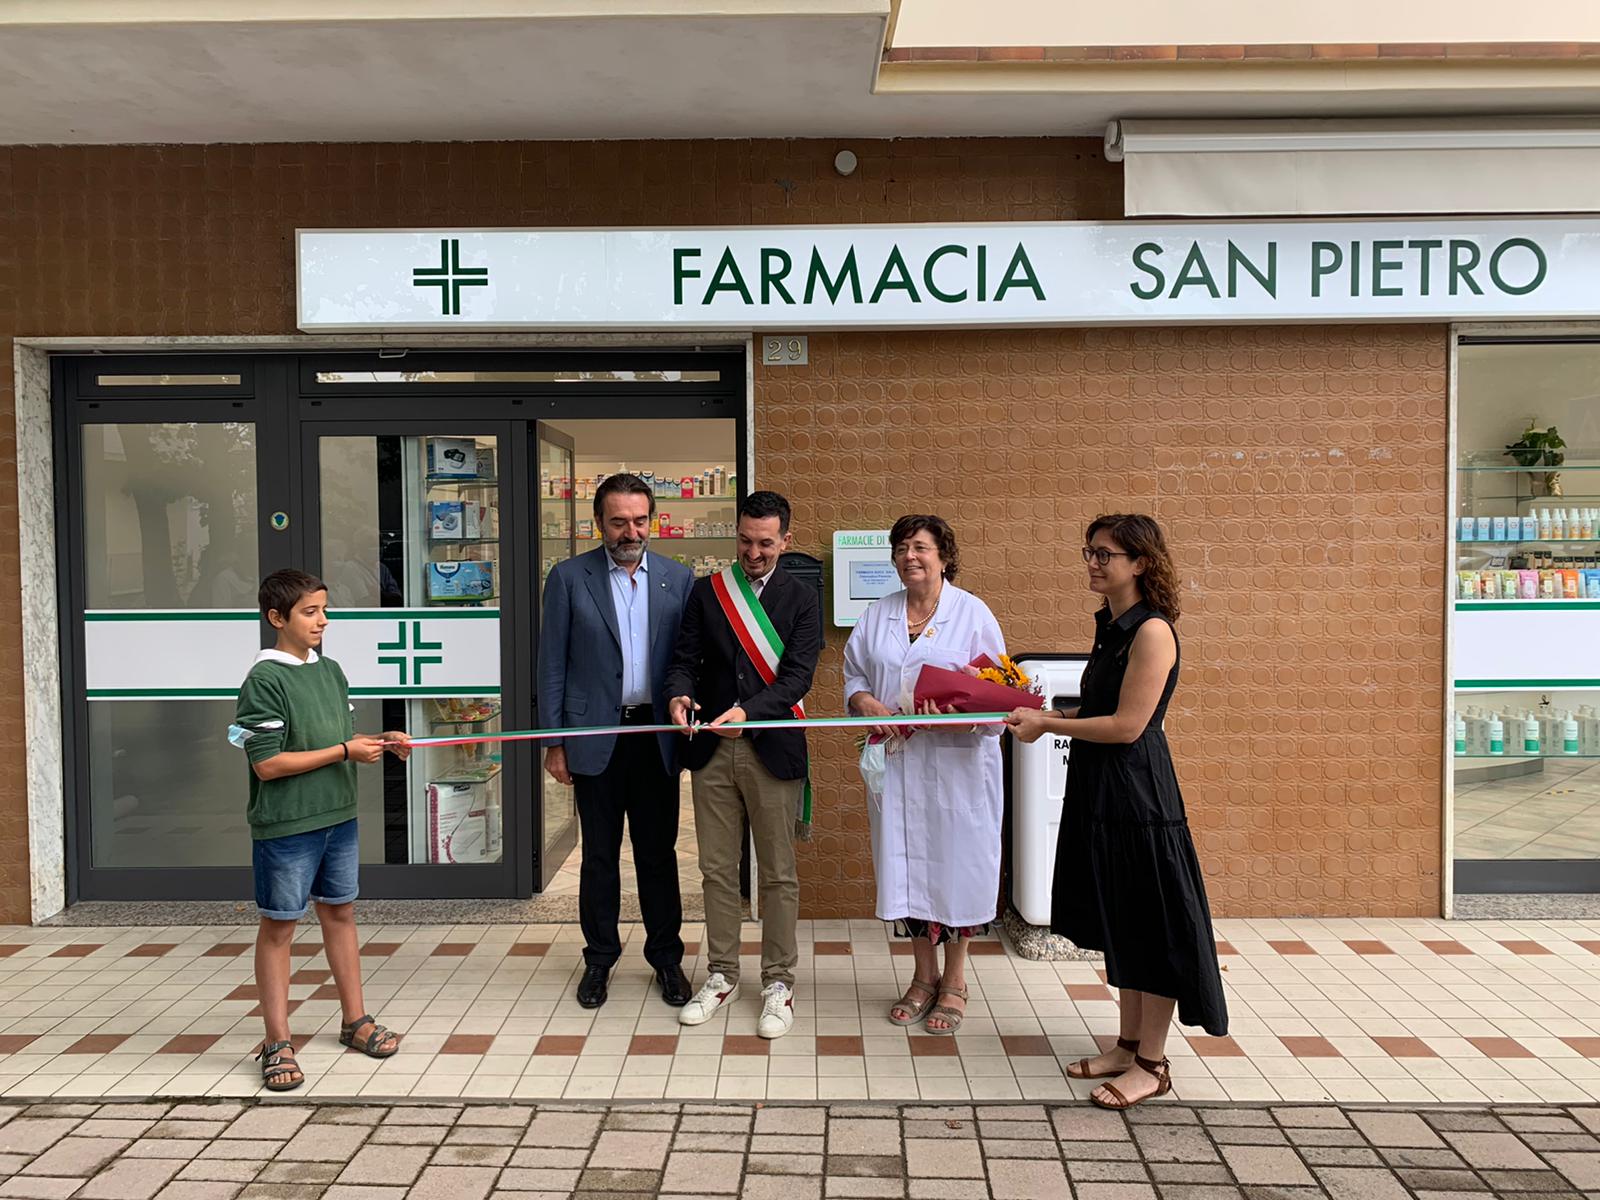 A Ponente ha aperto la nuova farmacia “San Pietro”